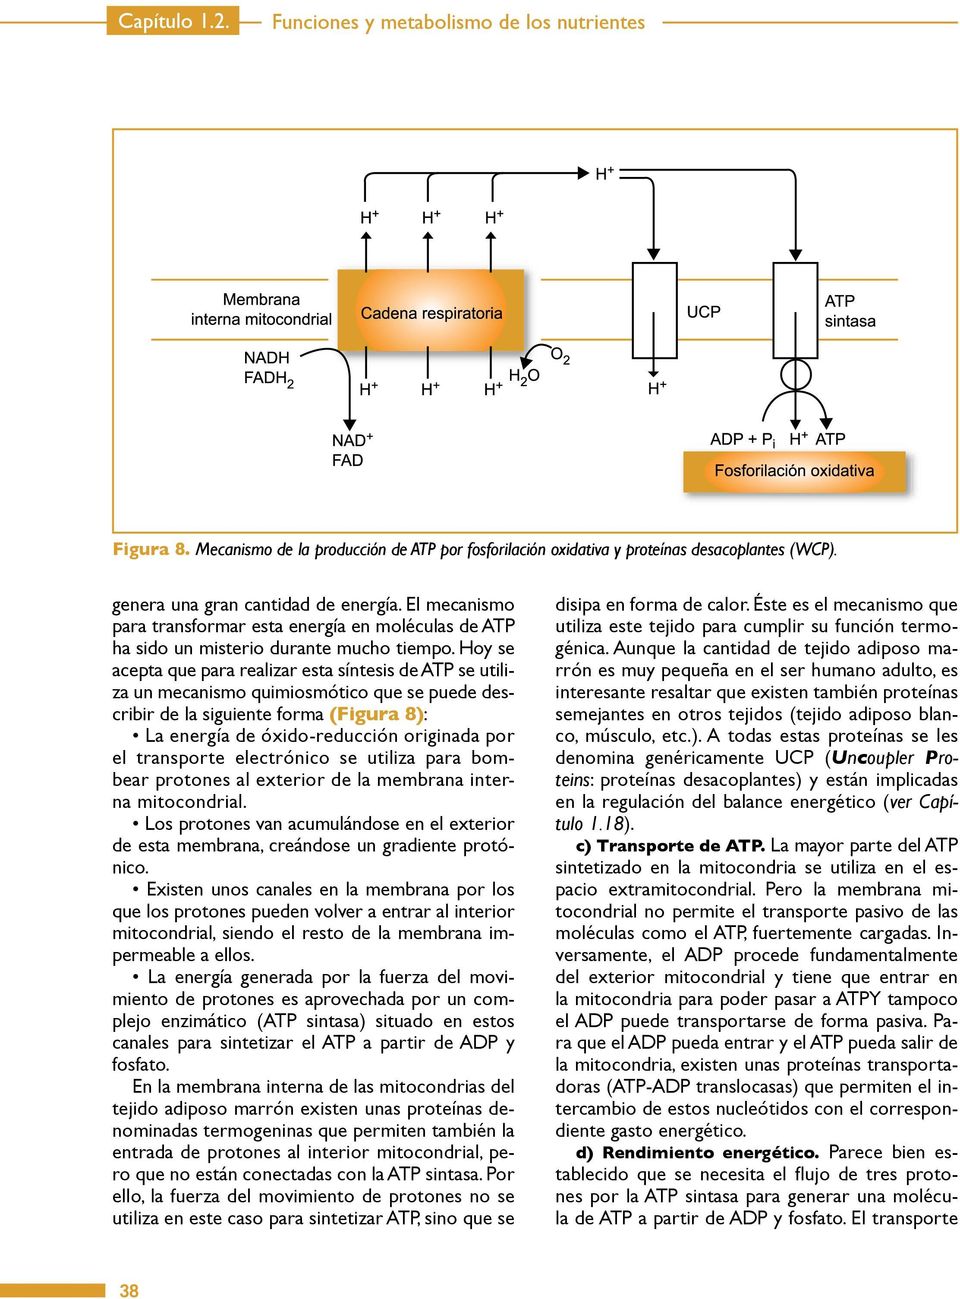 Hoy se acepta que para realizar esta síntesis de ATP se utiliza un mecanismo quimiosmótico que se puede describir de la siguiente forma (Figura 8): La energía de óxido-reducción originada por el